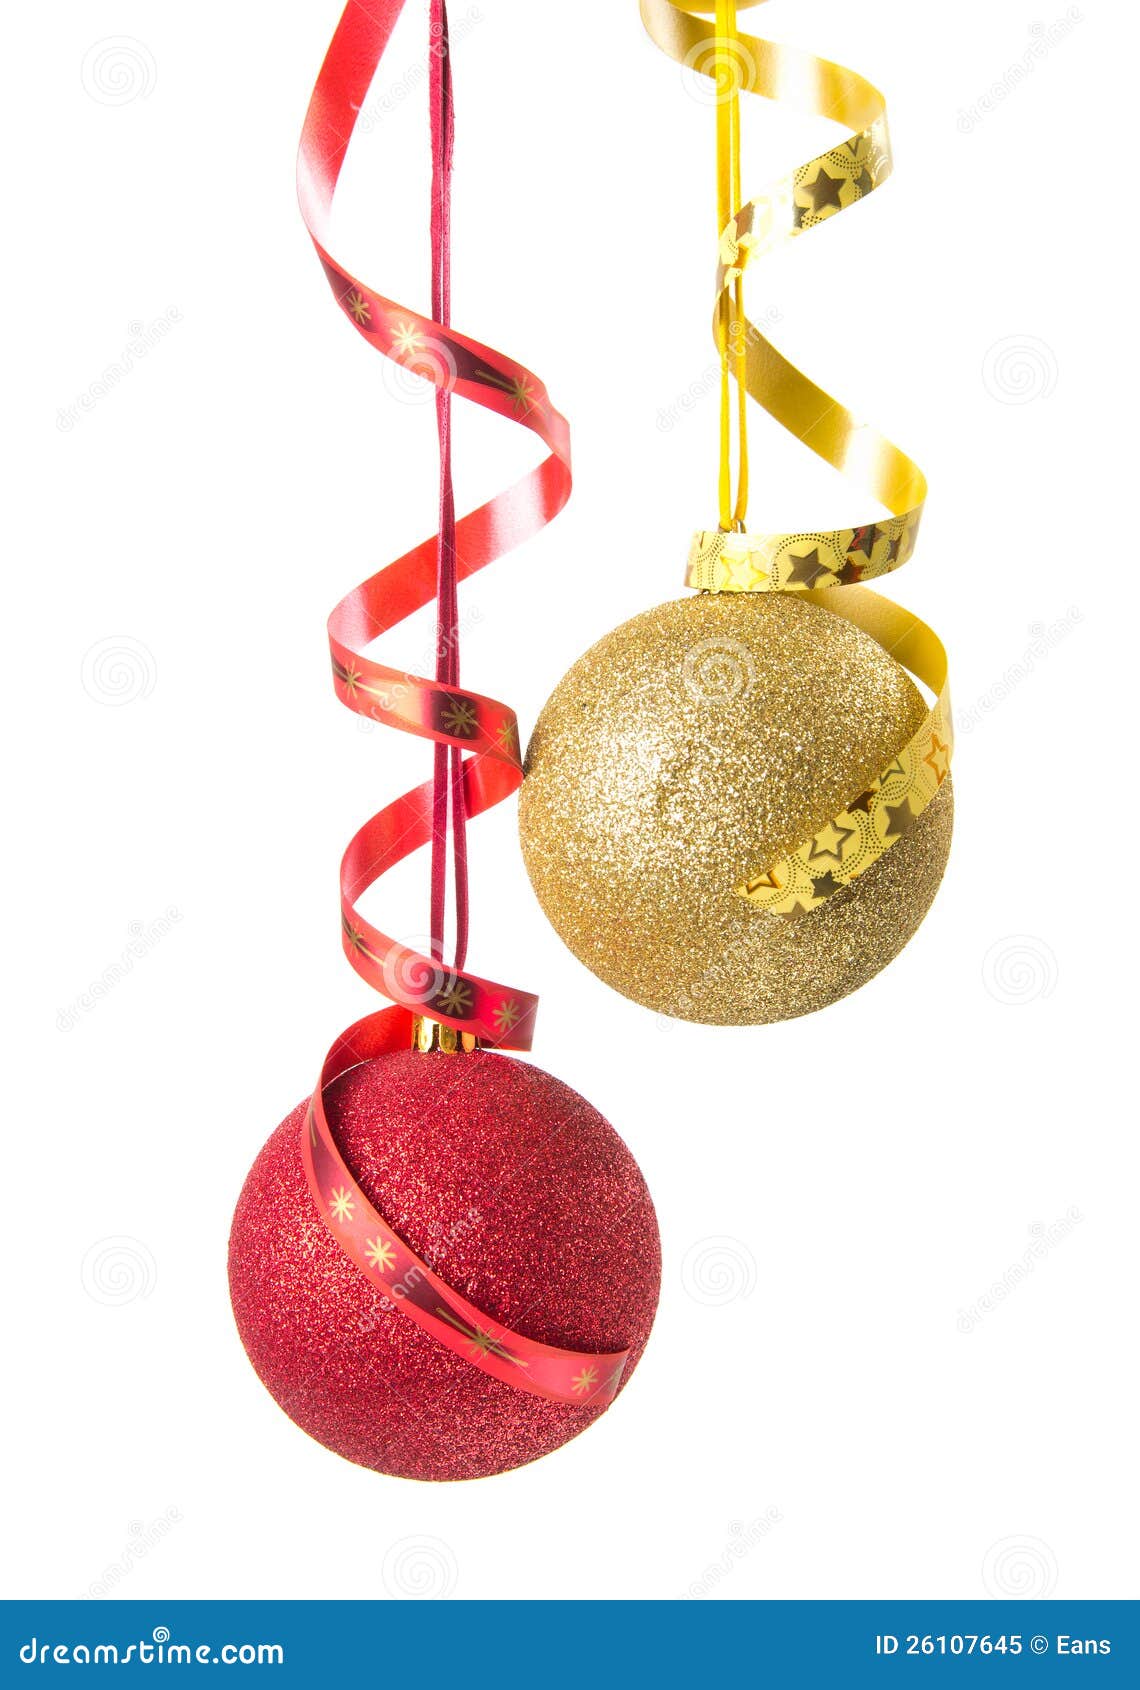 Christmas Decor Stock Image Image Of Christmas String 26107645